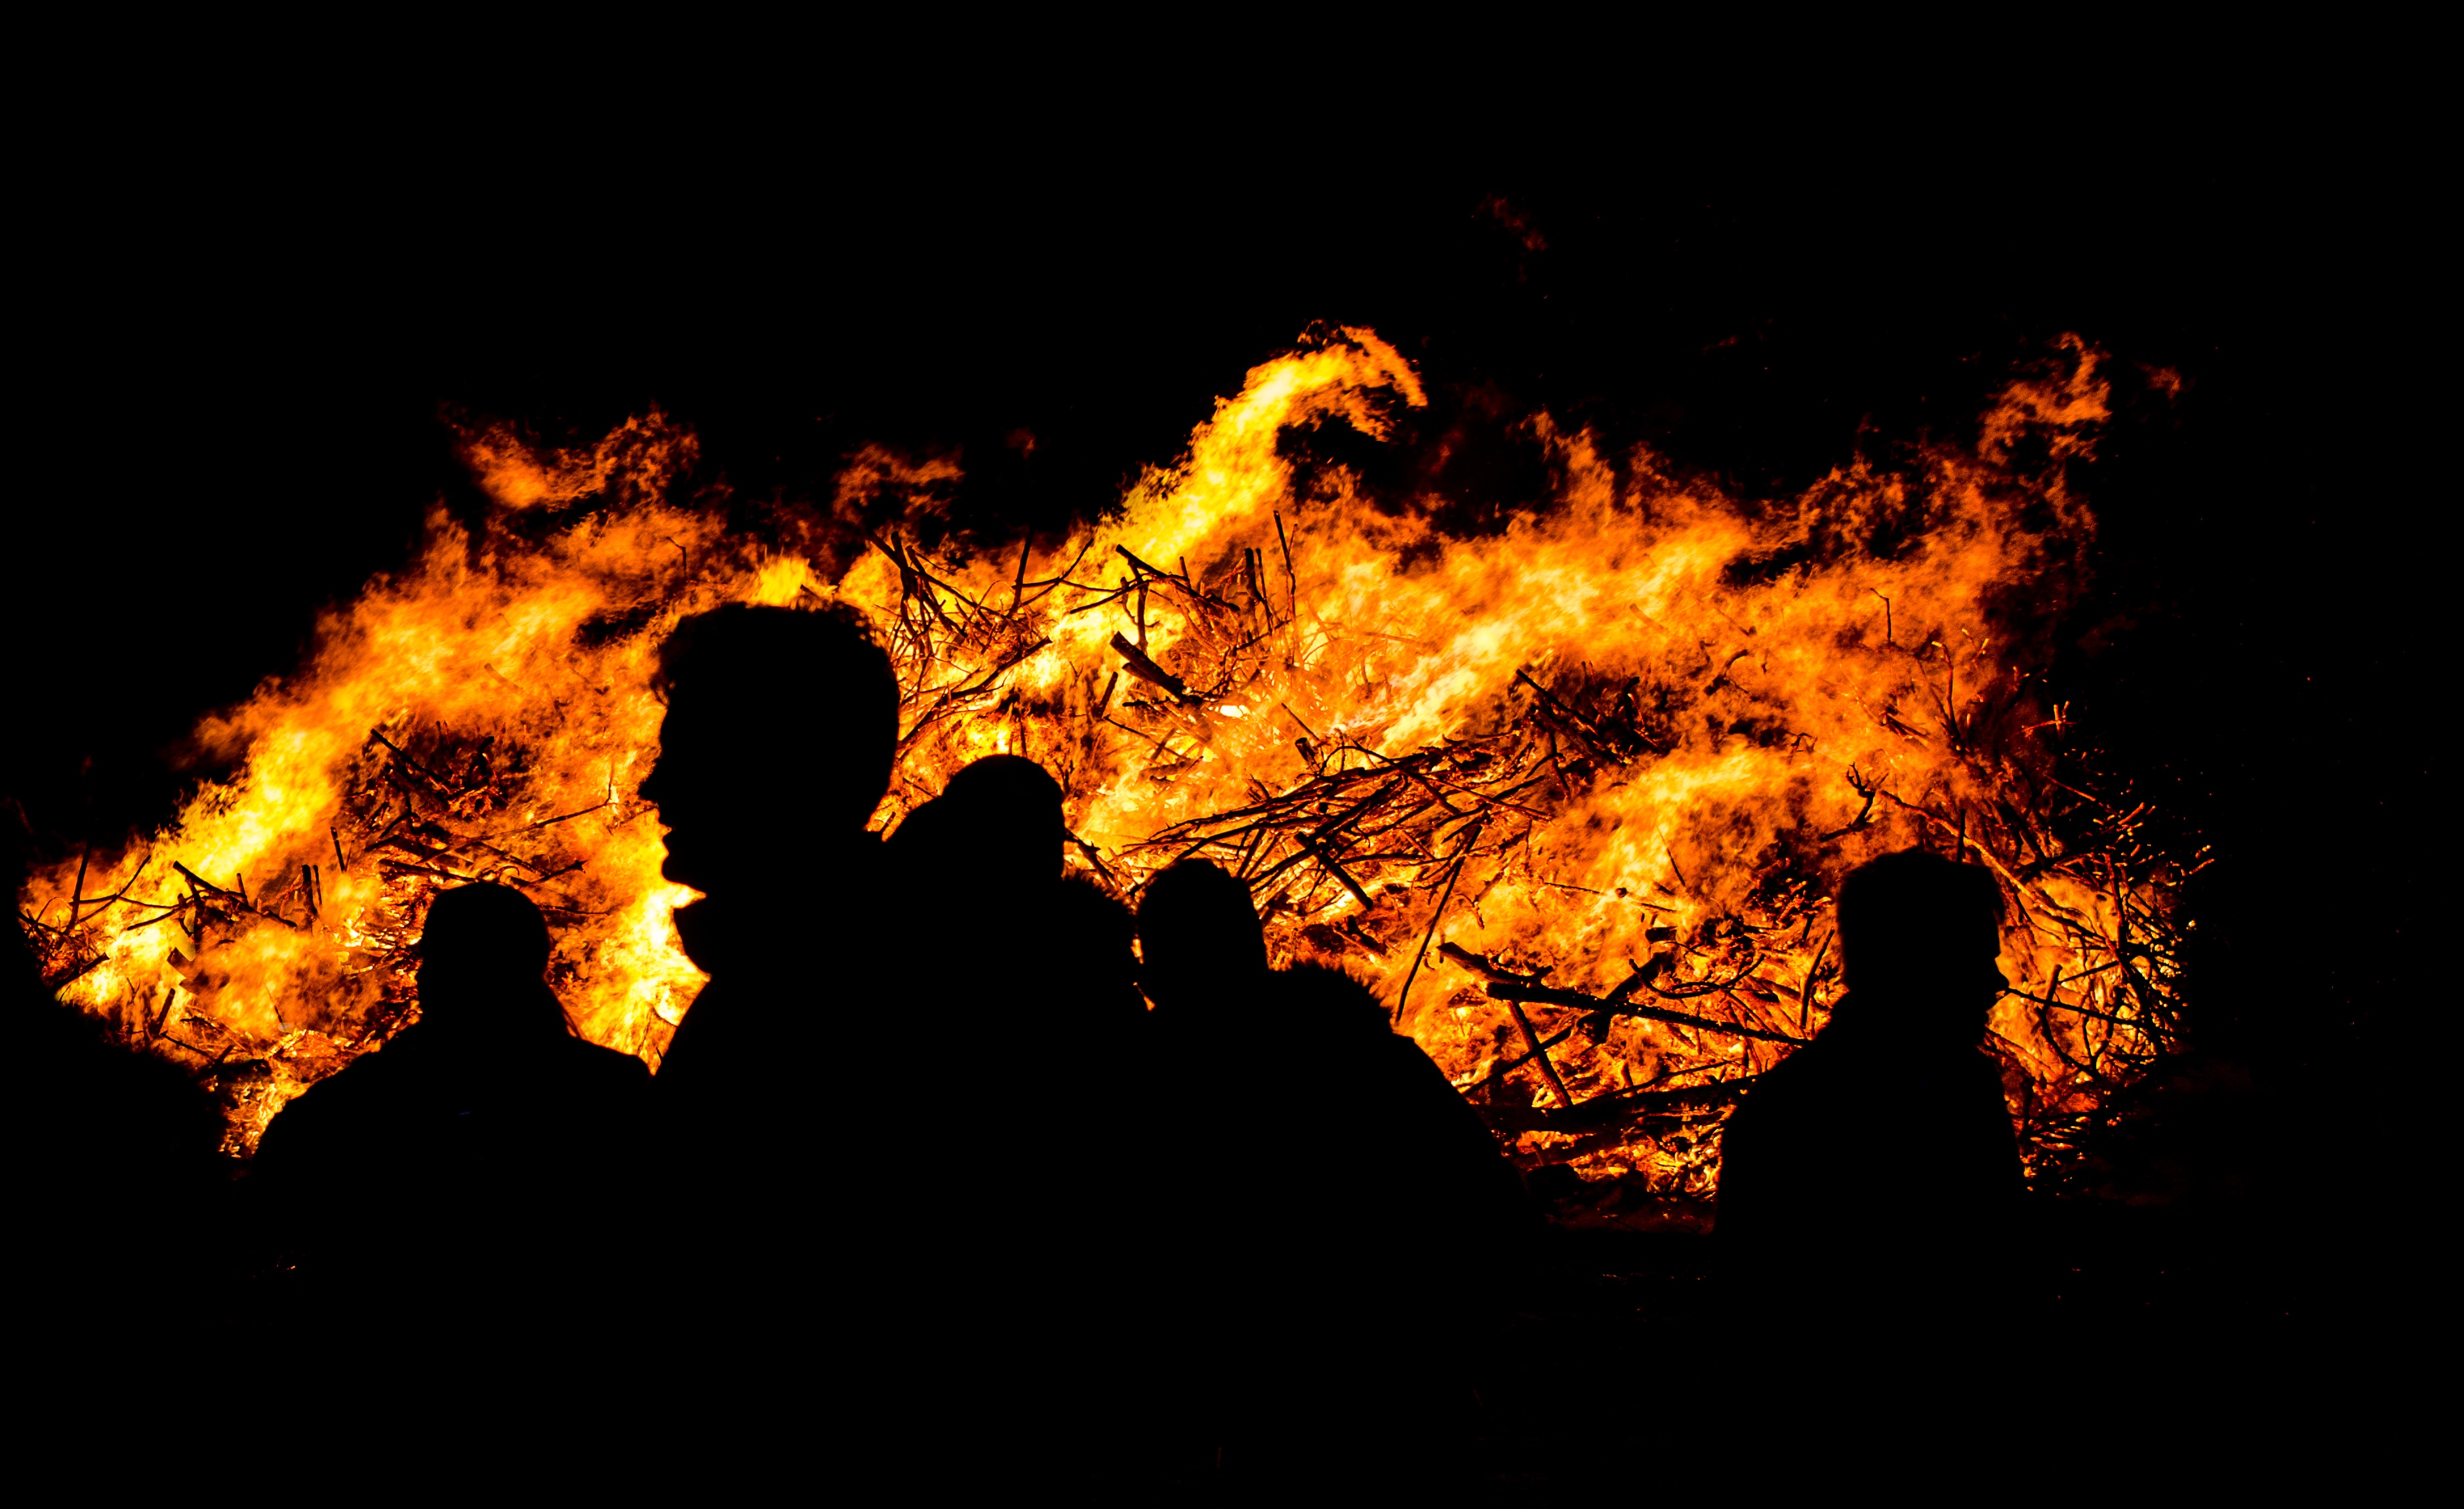 silhouette of people near fire